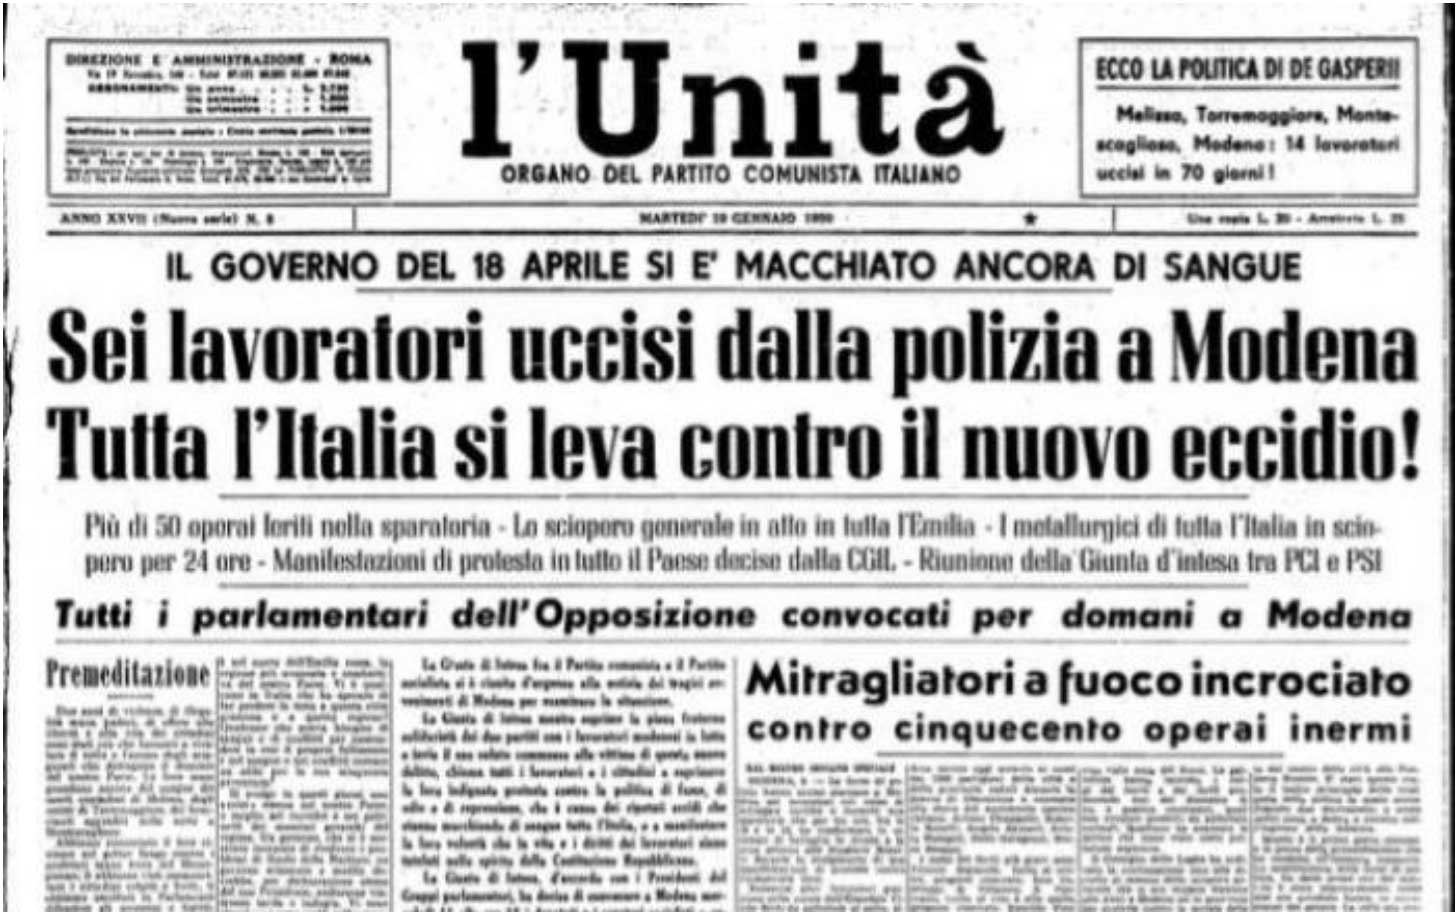 Via Berlusconi al posto di quella che ricorda  gli operai uccisi dalla polizia a Modena nel 1950